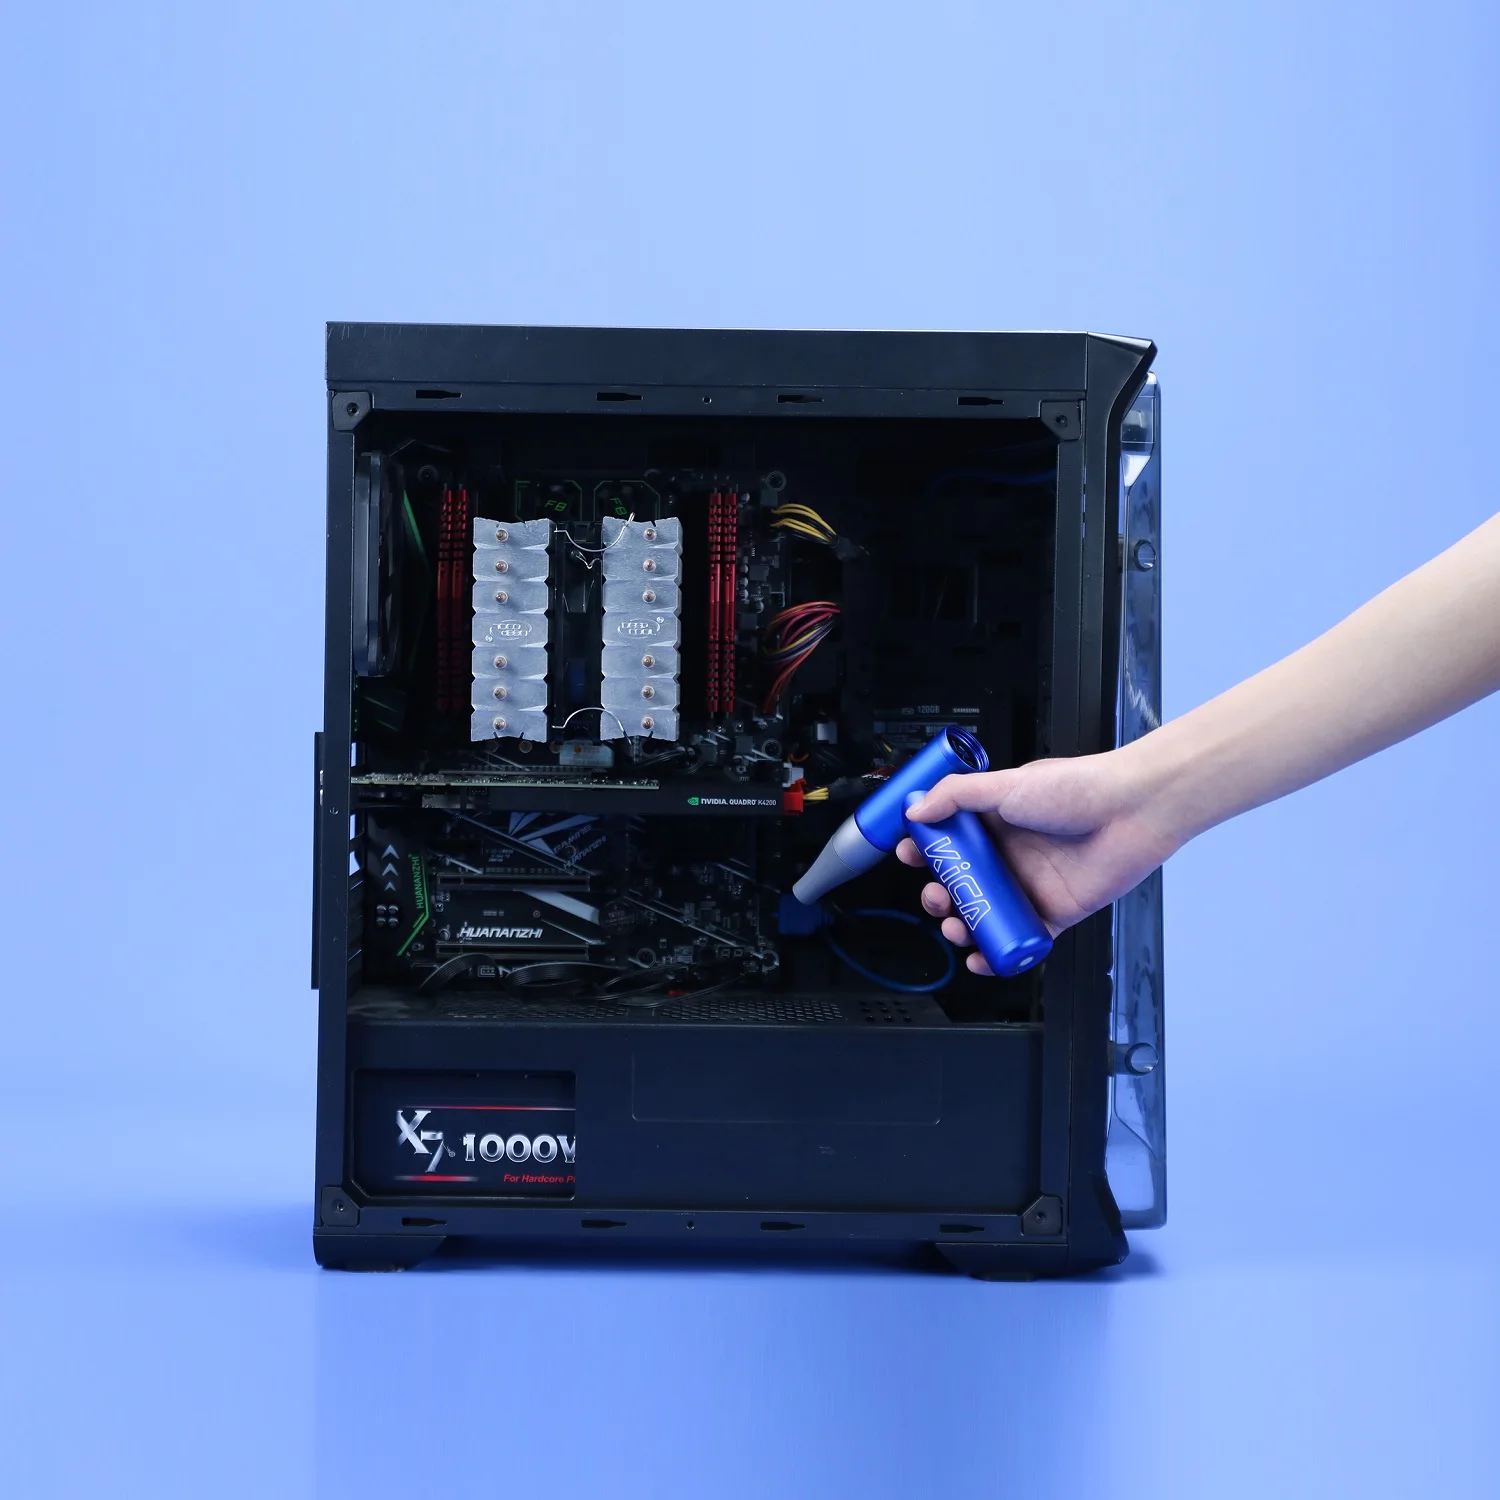 KICA Jetfan 전기 공기 송풍기 압축 공기 살포기 컴퓨터 키보드 클리너 충전식 미니 터보 팬 휴대용 제트 팬